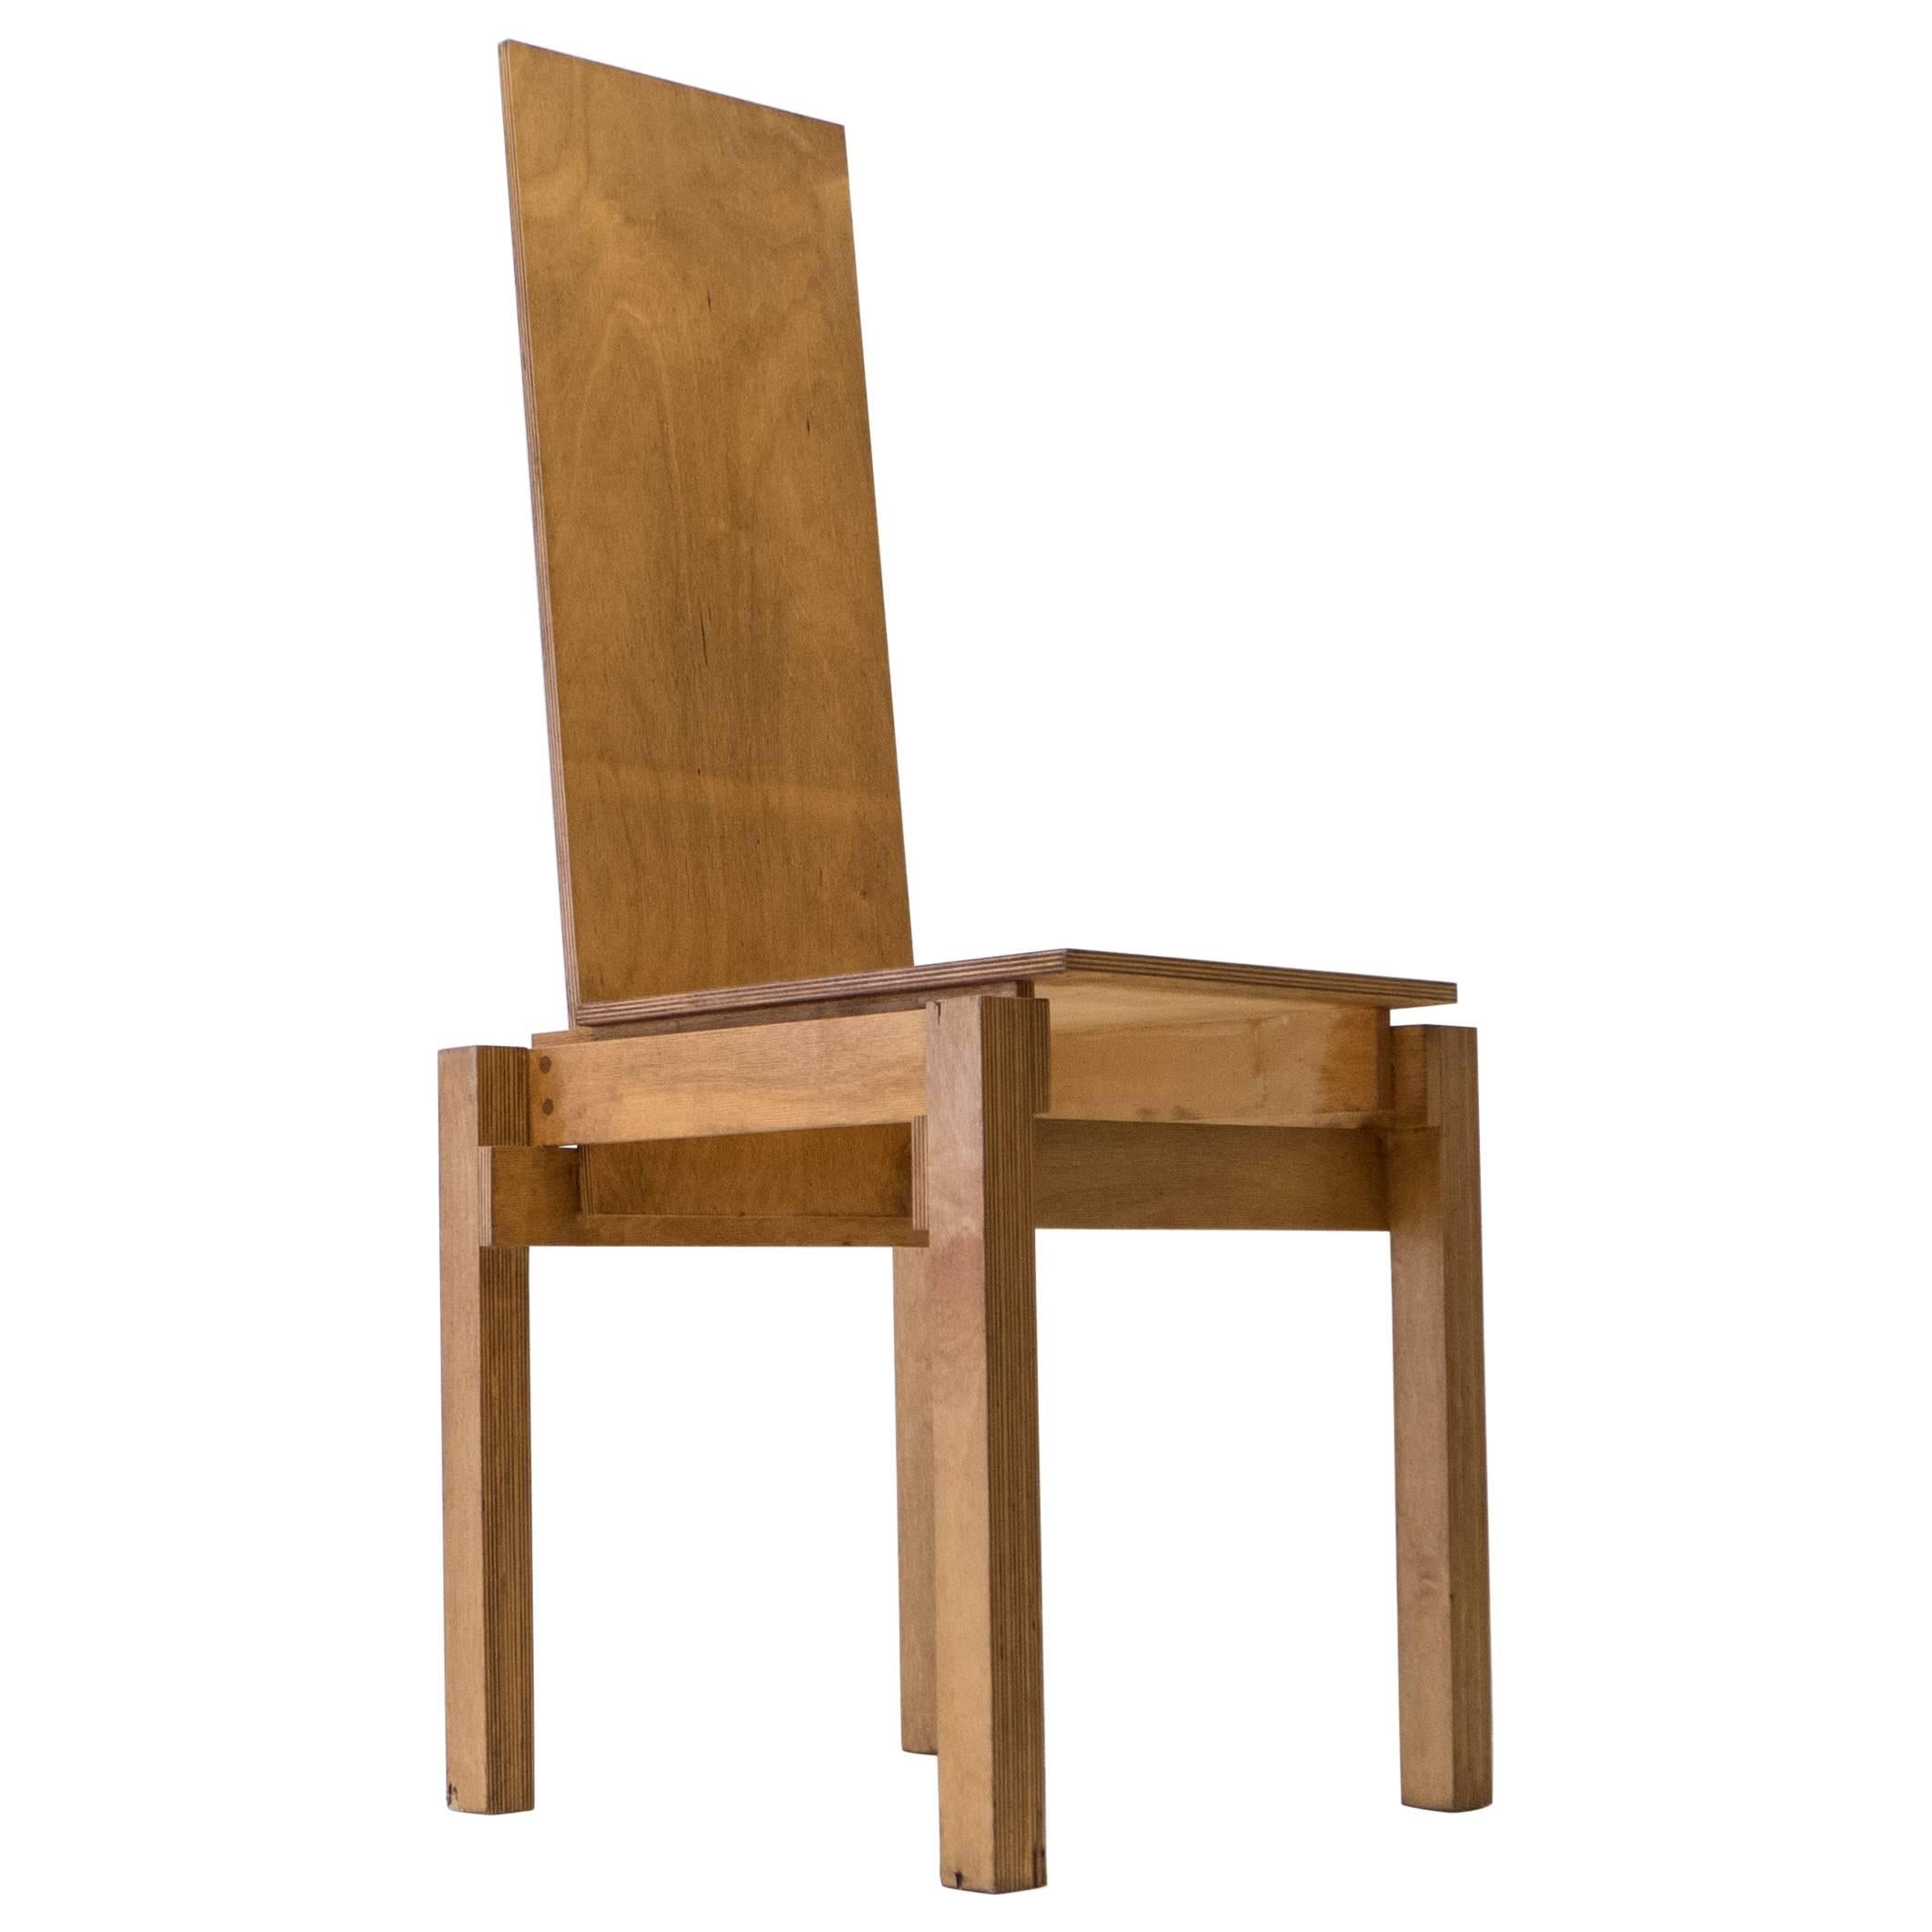 Constructivist Chair in Birch Plywood